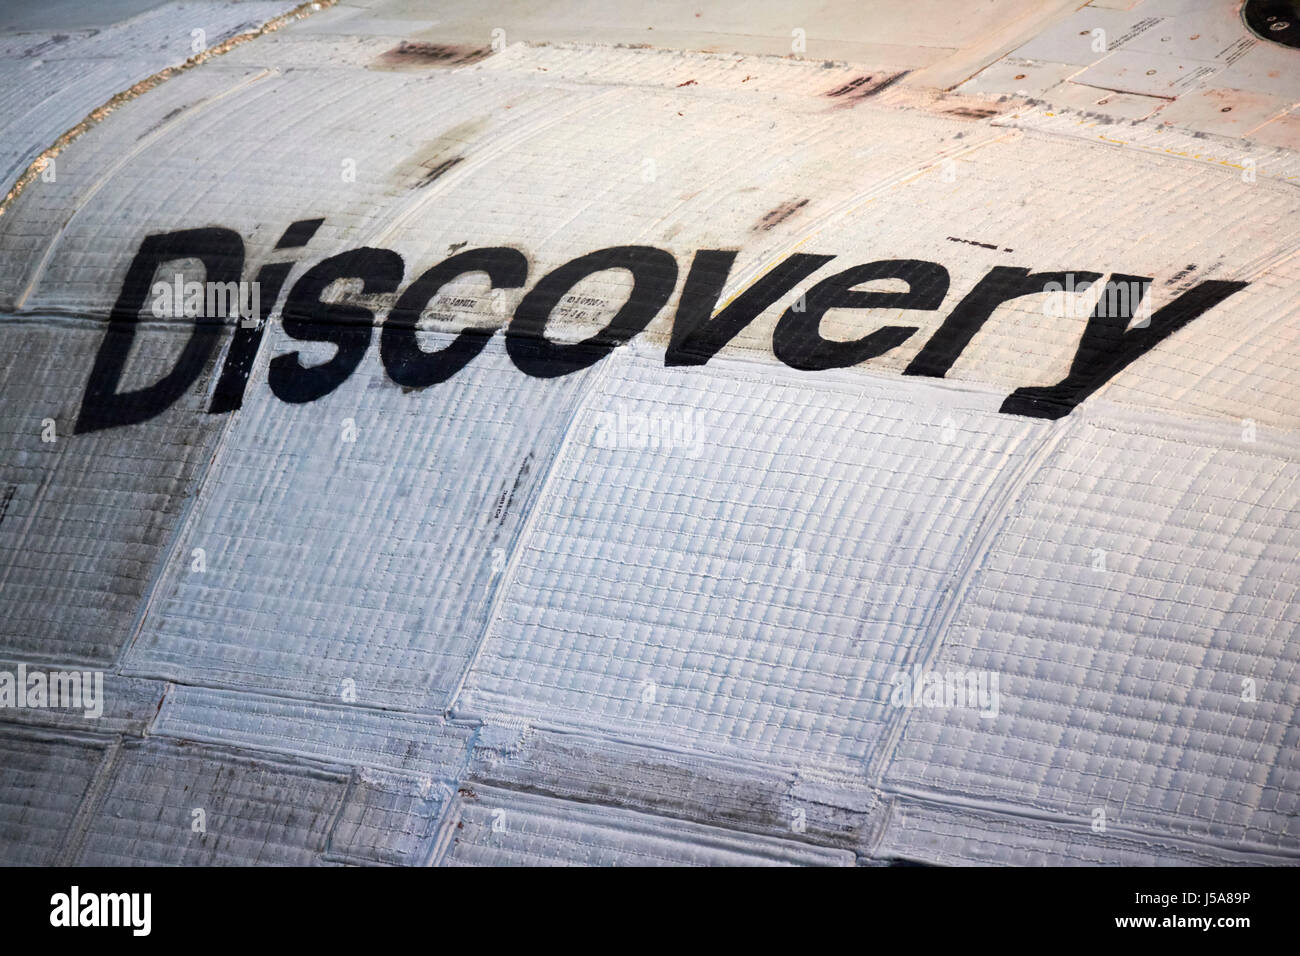 Entdeckung-Zeichen auf flexible Isolierung Decke Fliesen Hitzeschild Space shuttle-usa Stockfoto